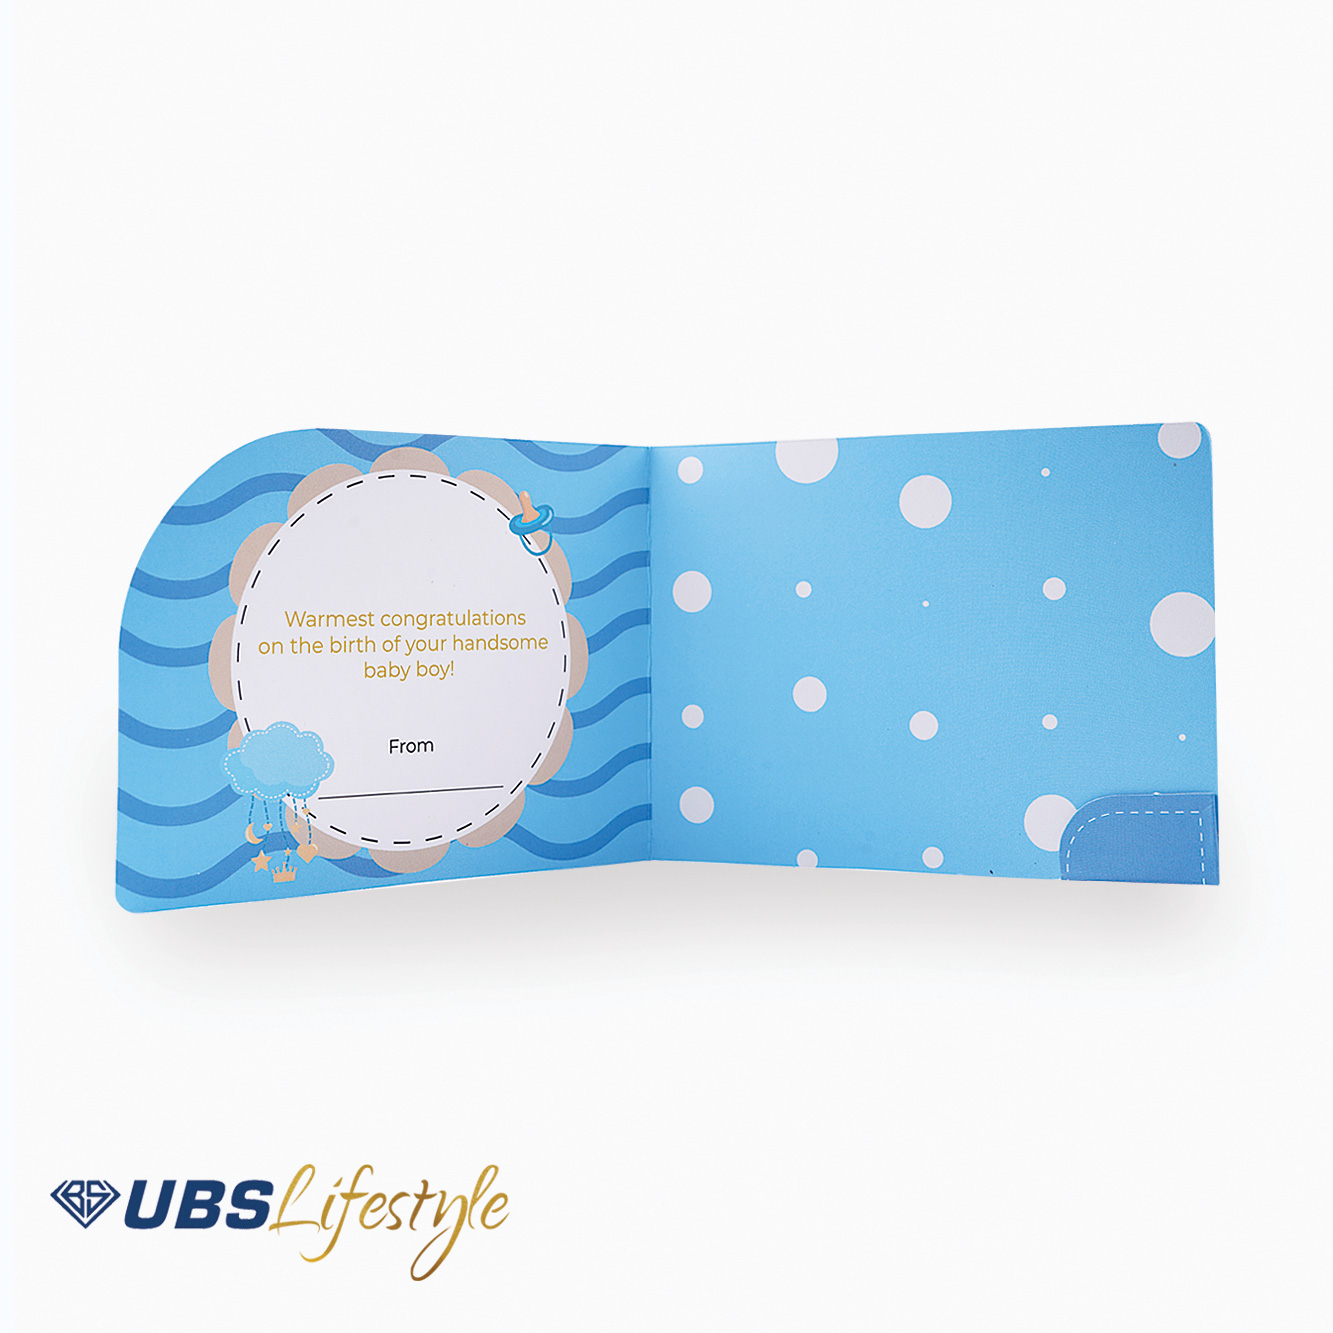 Kartu Ucapan UBS Lifestyle Edisi Newborn Baby Boy - Yakkk0481